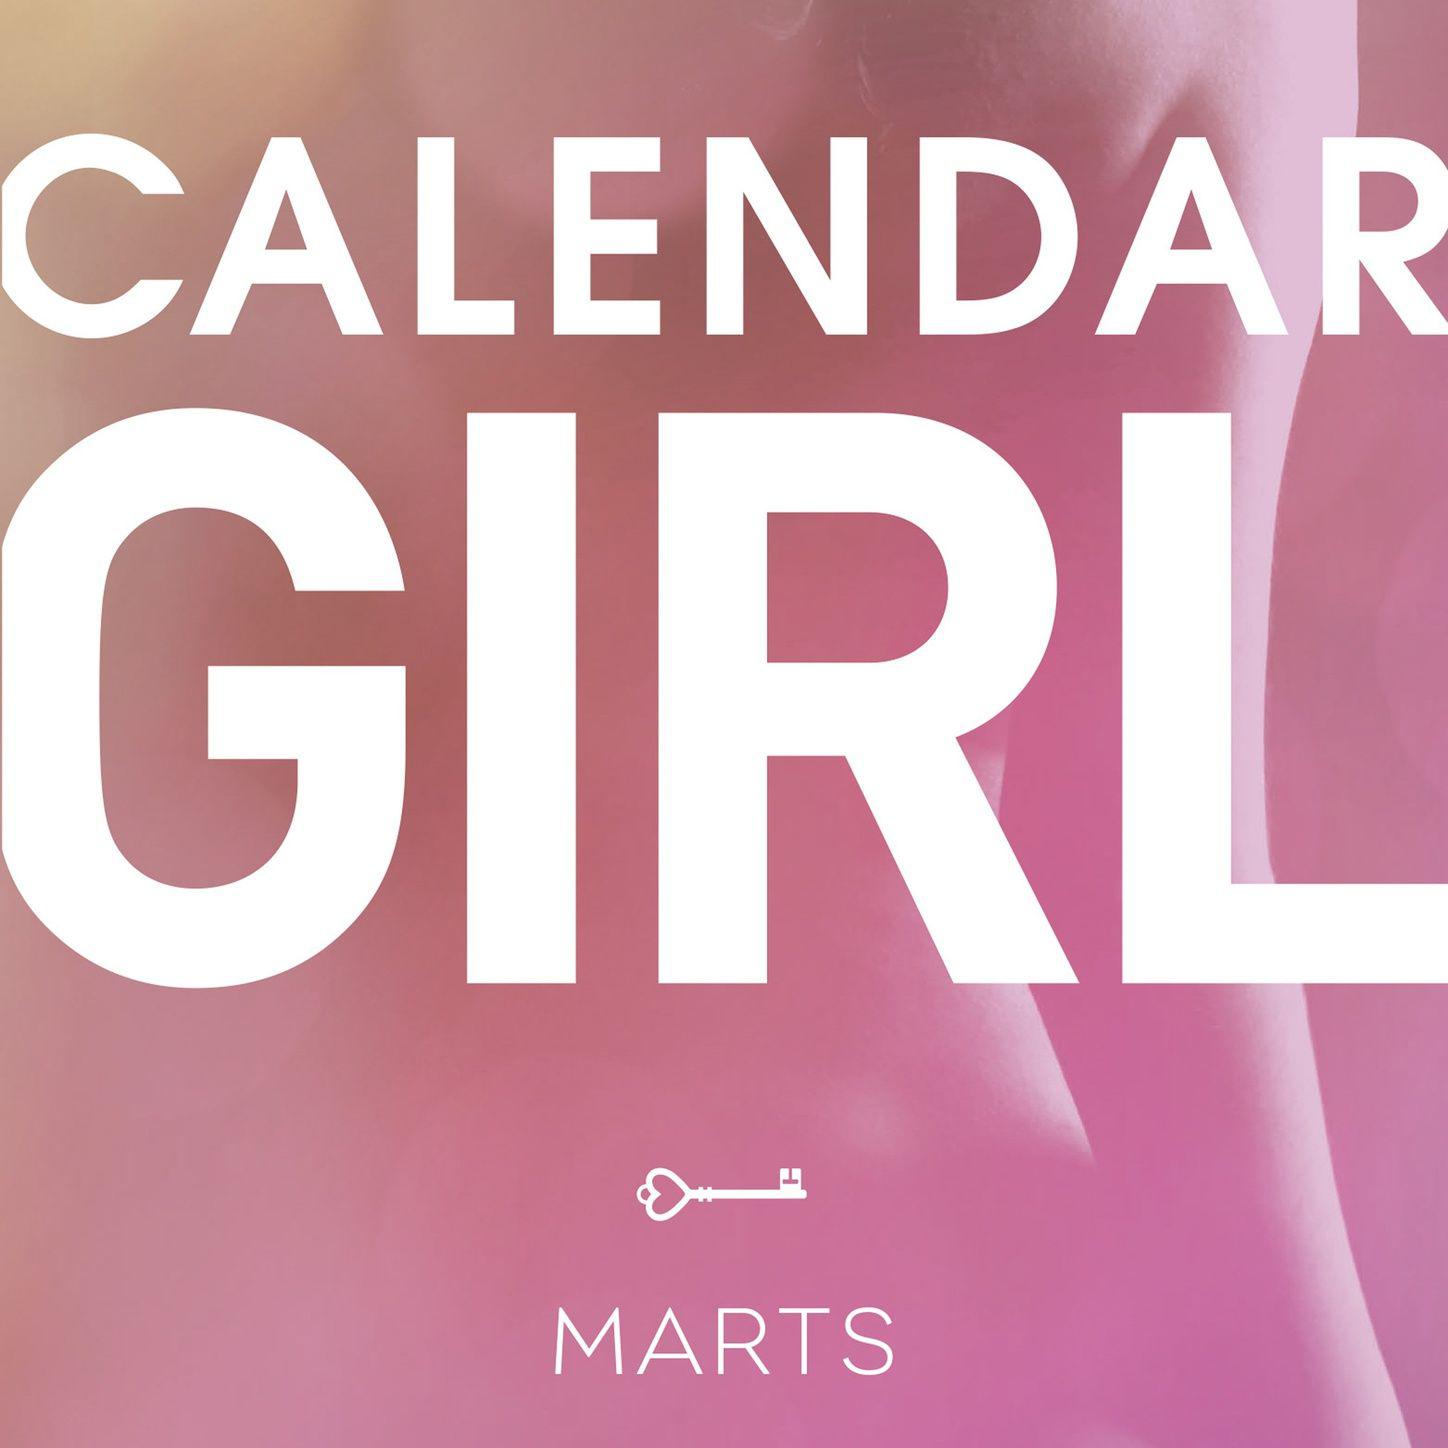 marts - calendar girl 3, del027